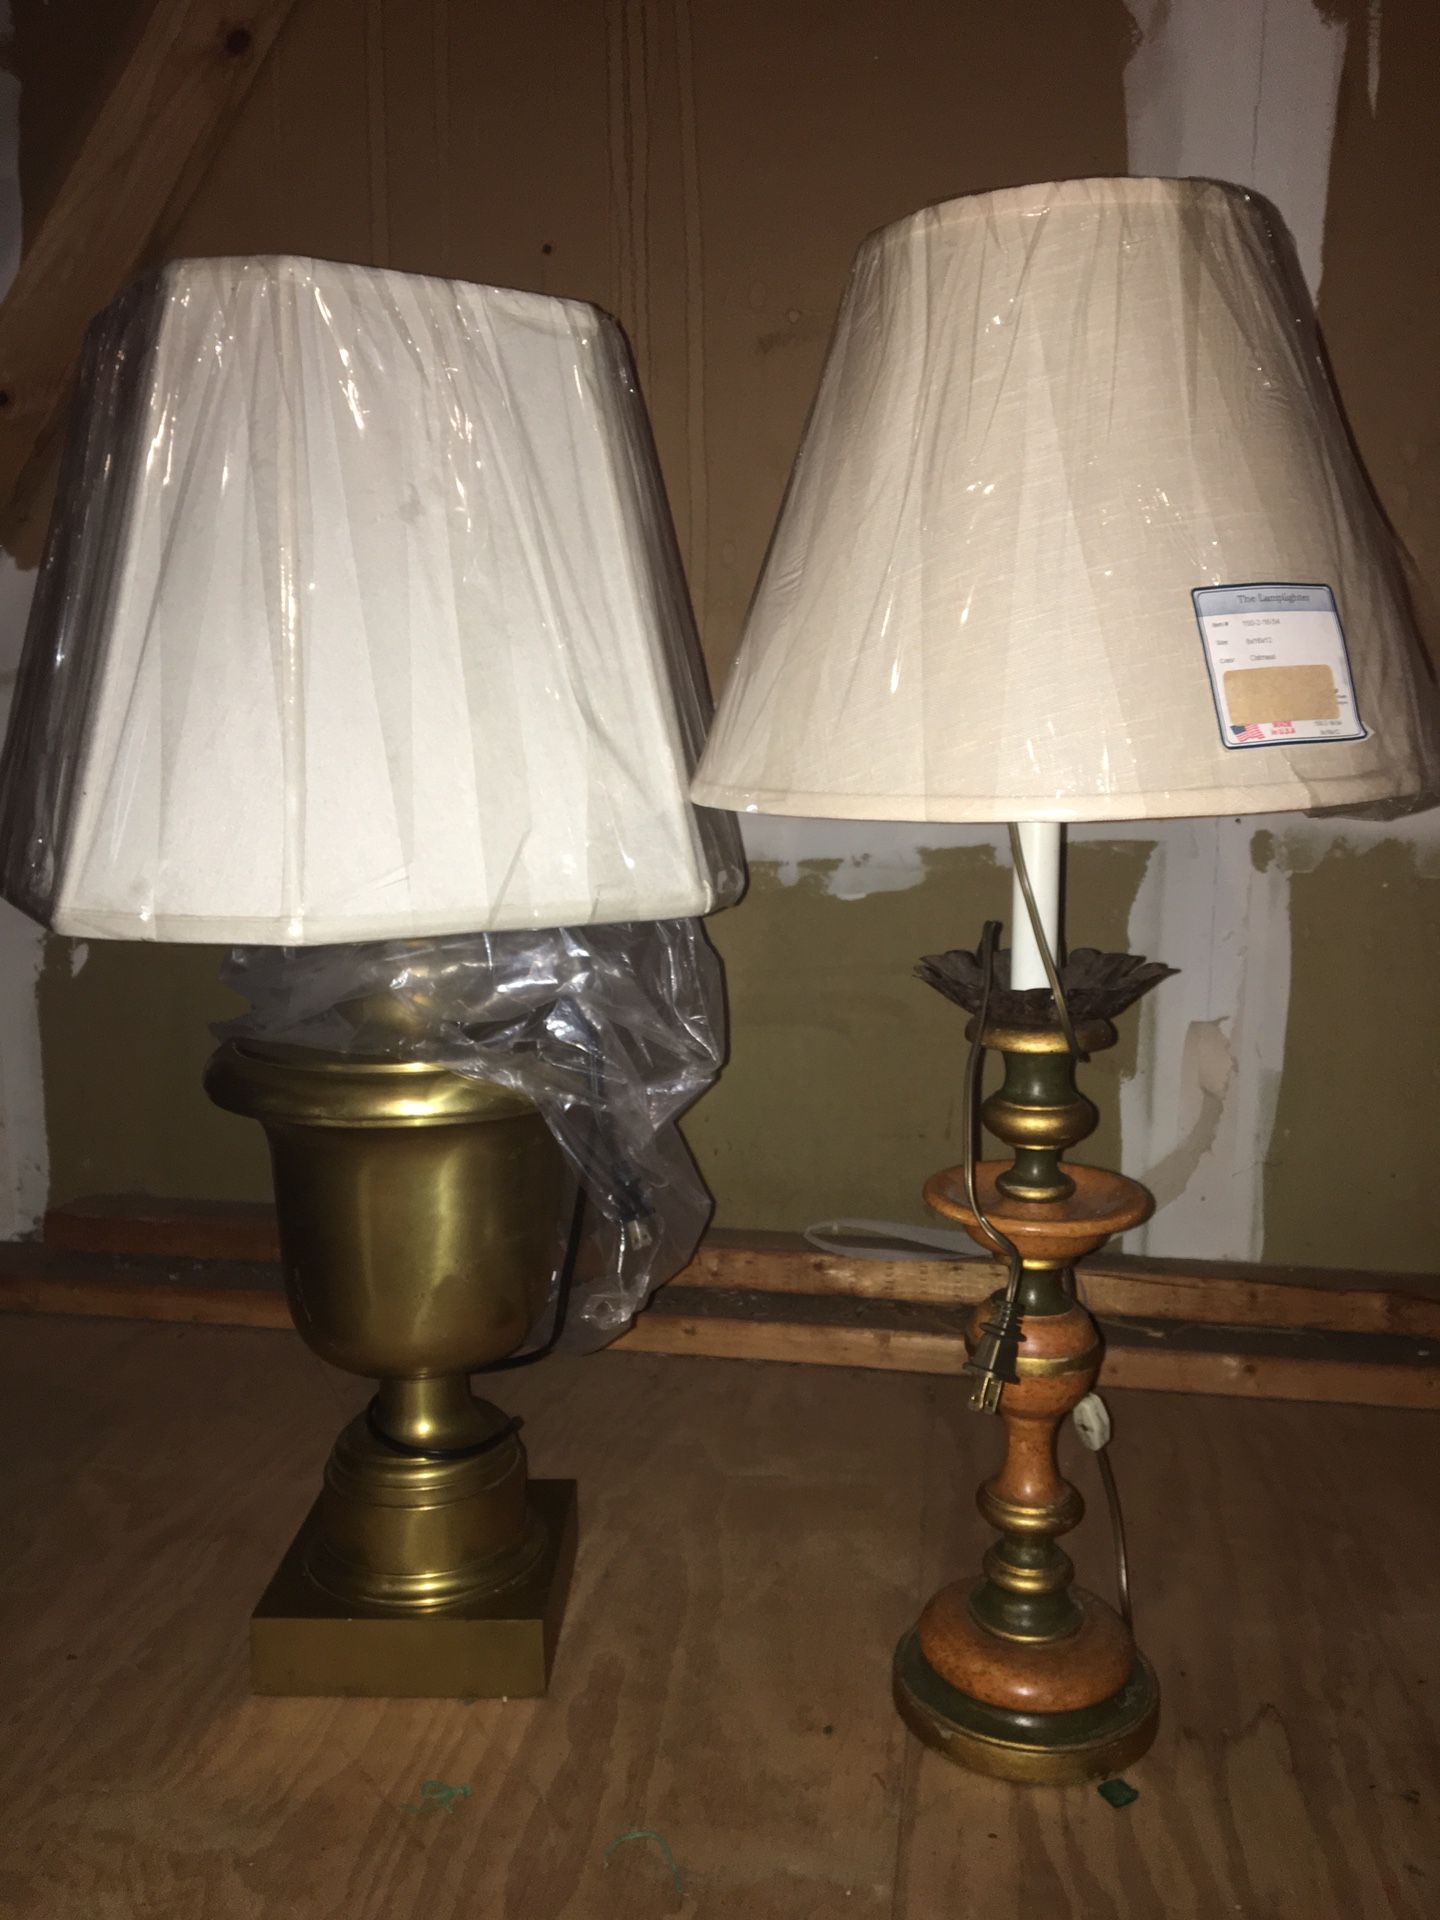 Antique lamps!